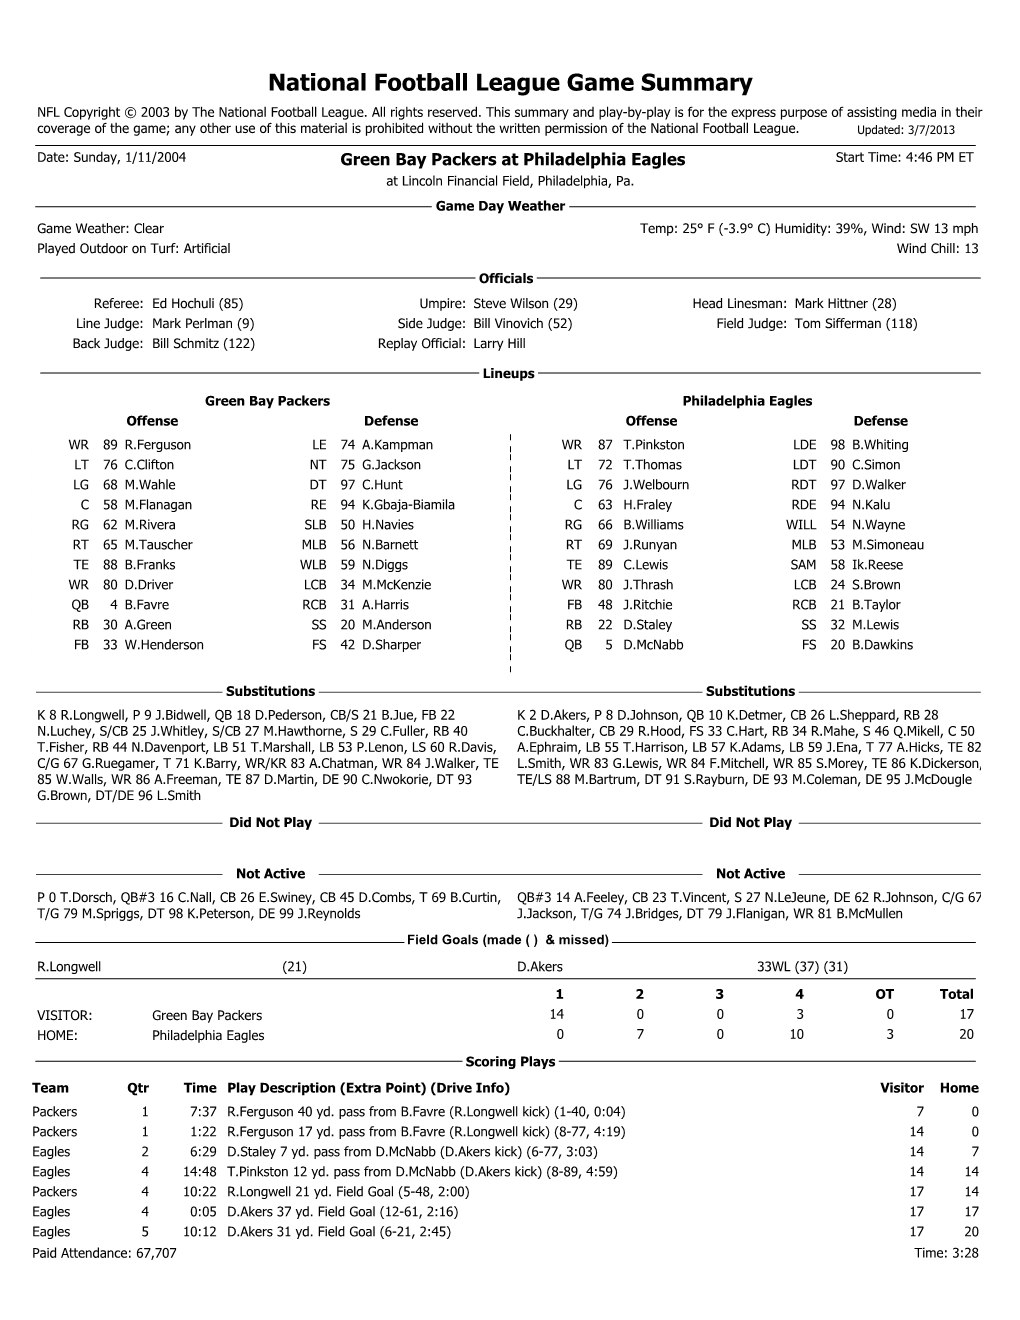 National Football League Game Summary NFL Copyright © 2003 by the National Football League